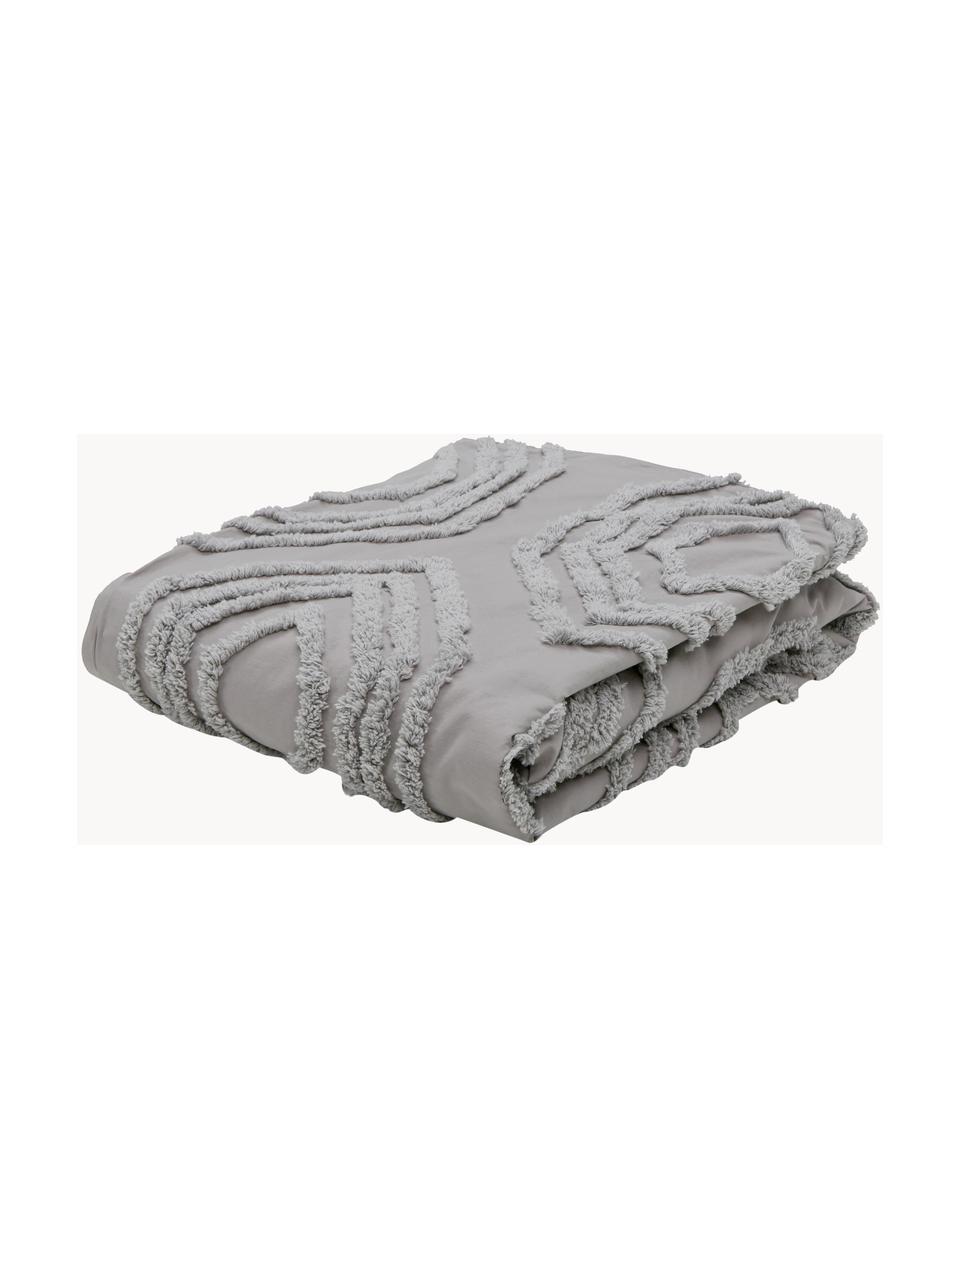 Tagesdecke Faye mit getufteter Verzierung, 100% Baumwolle, Grau, B 160 x L 200 cm (für Betten bis 120 x 200 cm)